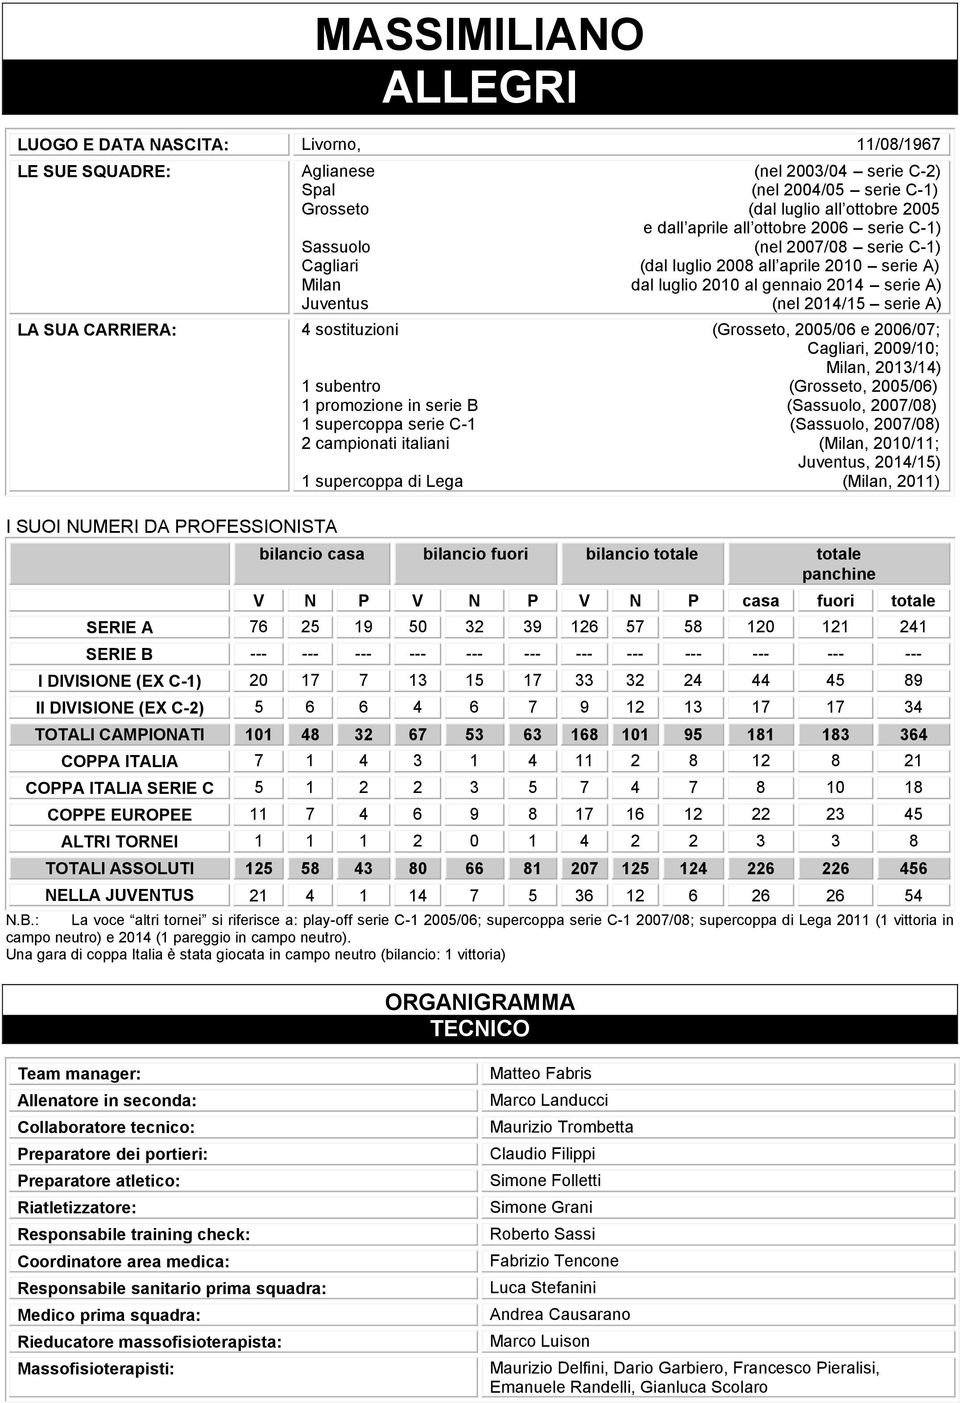 25/6 e 26/7; Cagliari, 29/; Milan, 2/4) subentro (Grosseto, 25/6) promozione in serie B (Sassuolo, 27/8) supercoppa serie C- (Sassuolo, 27/8) 2 campionati italiani (Milan, 2/; Juventus, 24/5)